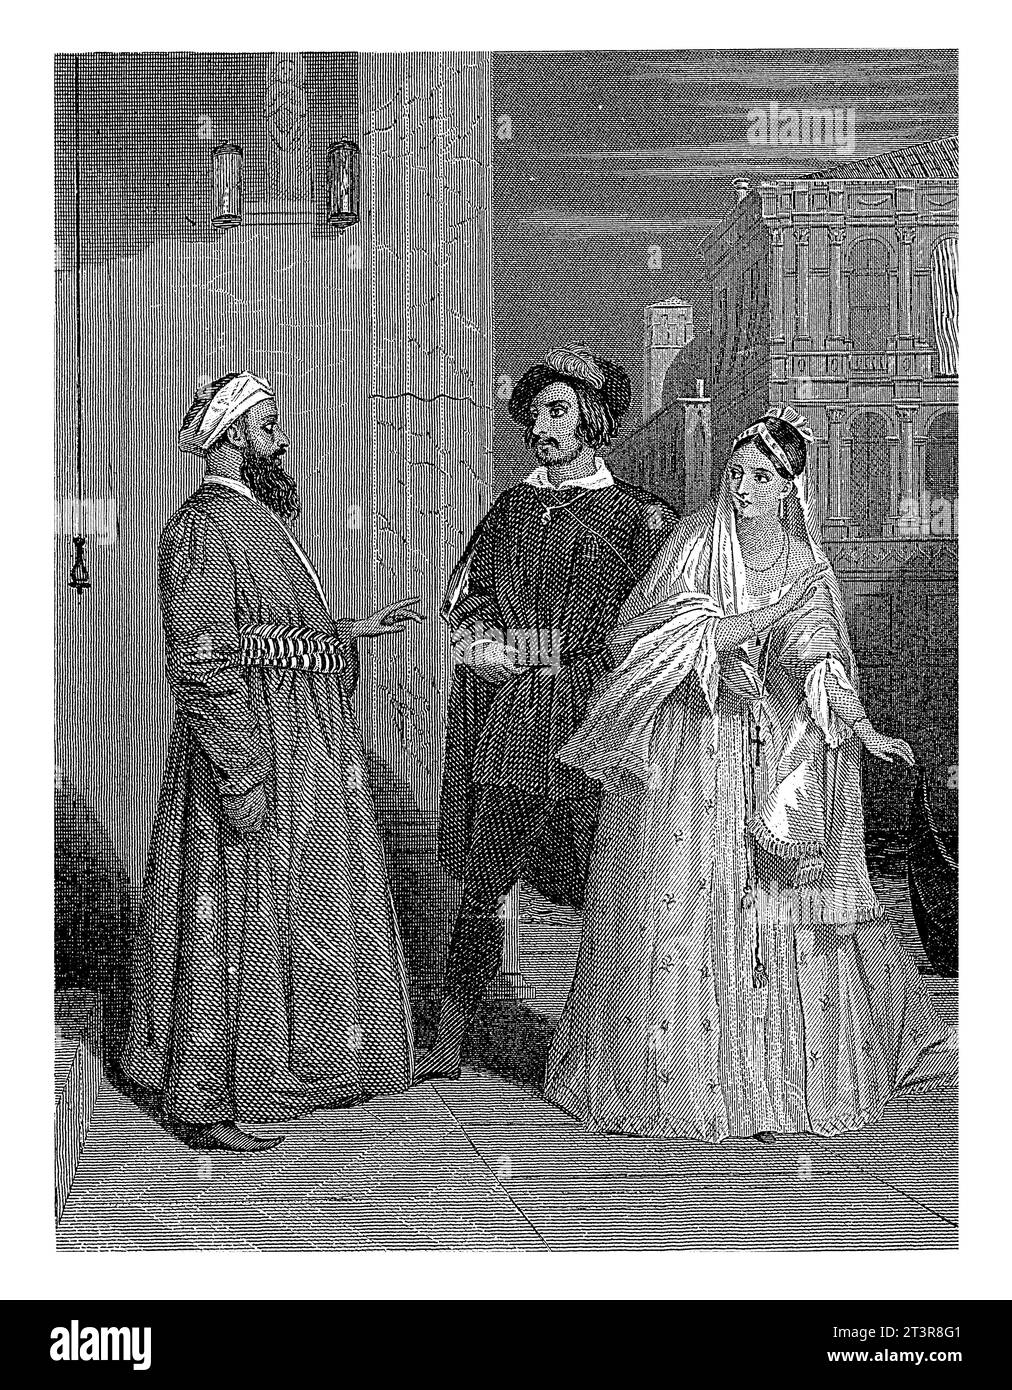 Stadtbild mit Araber und Mann mit Frau, Dirk Jurriaan Sluyter, 1849 ein Araber spricht ein westliches Paar an. Die Dame schreckt vor ihm zurück. Stockfoto